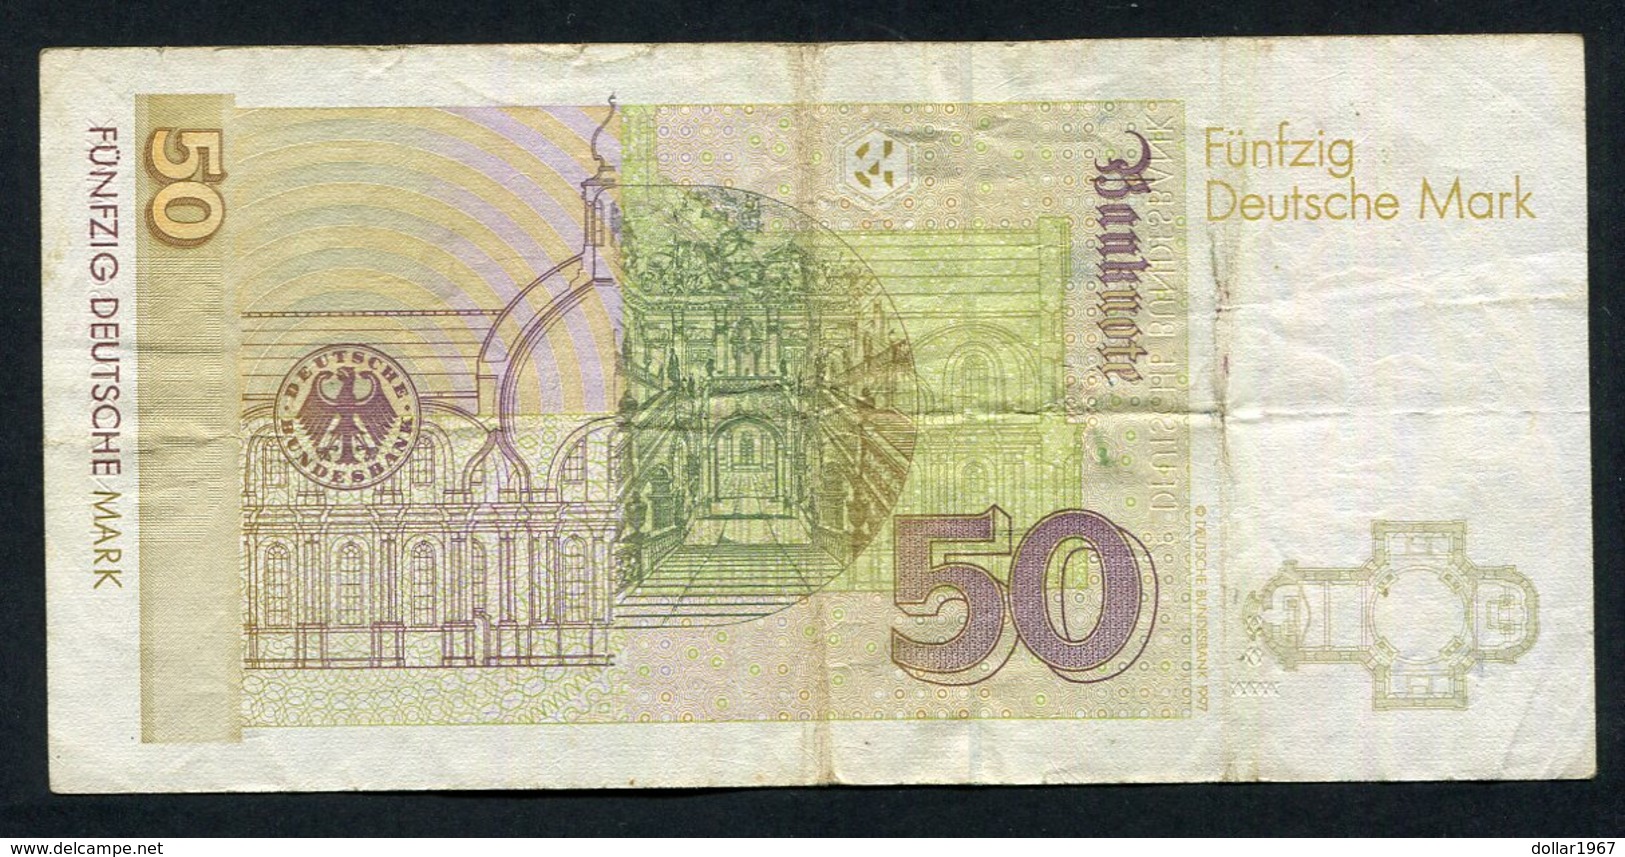 50 Dm / Deutsche Mark / Bundesbanknote 2-1-1996 - See The 2 Scans For Condition.(Originalscan ) - 50 Deutsche Mark